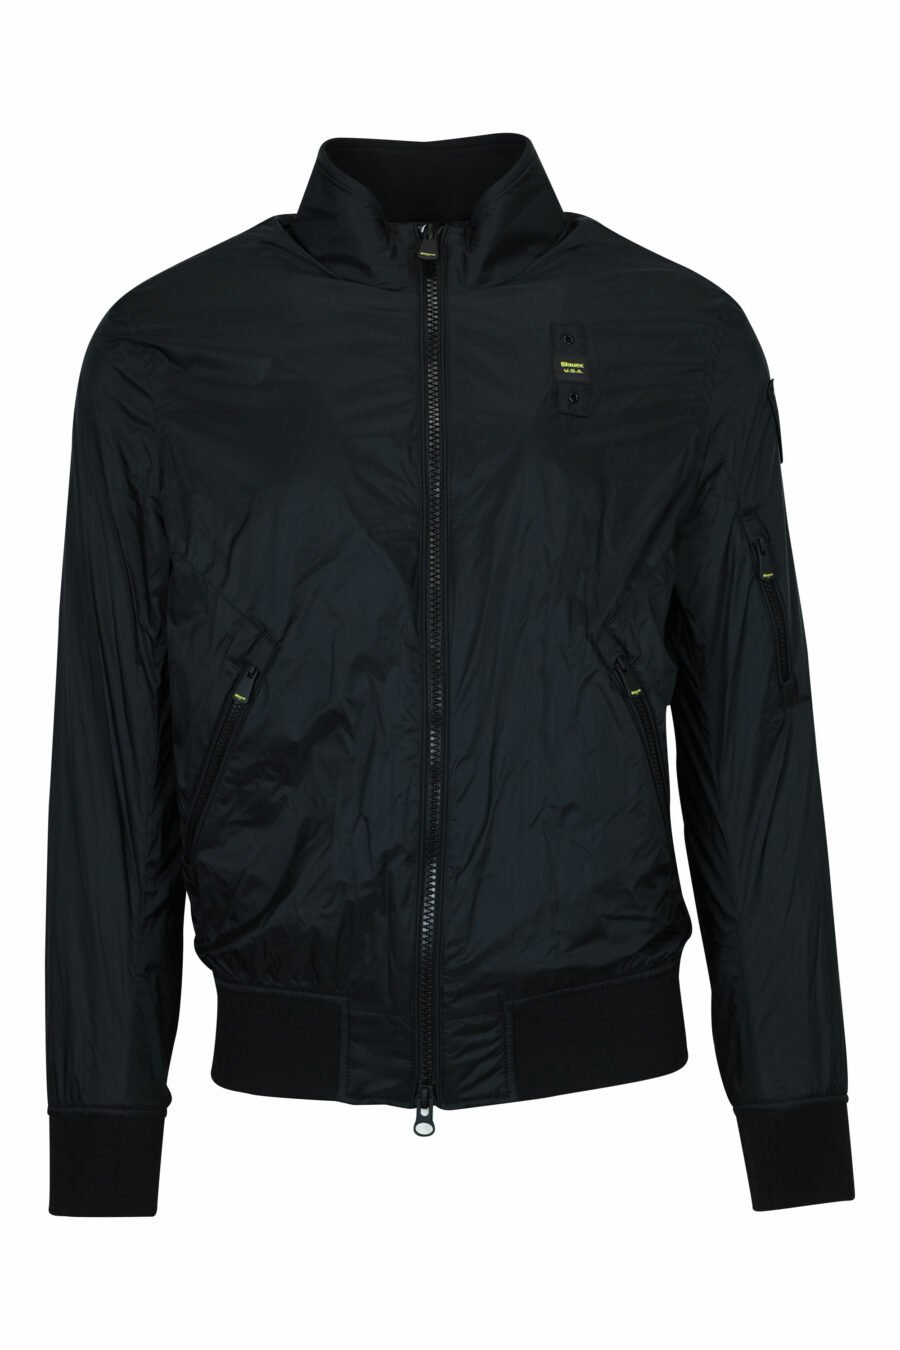 Schwarze Jacke mit seitlichem Reißverschluss und Logo - 8058610786533